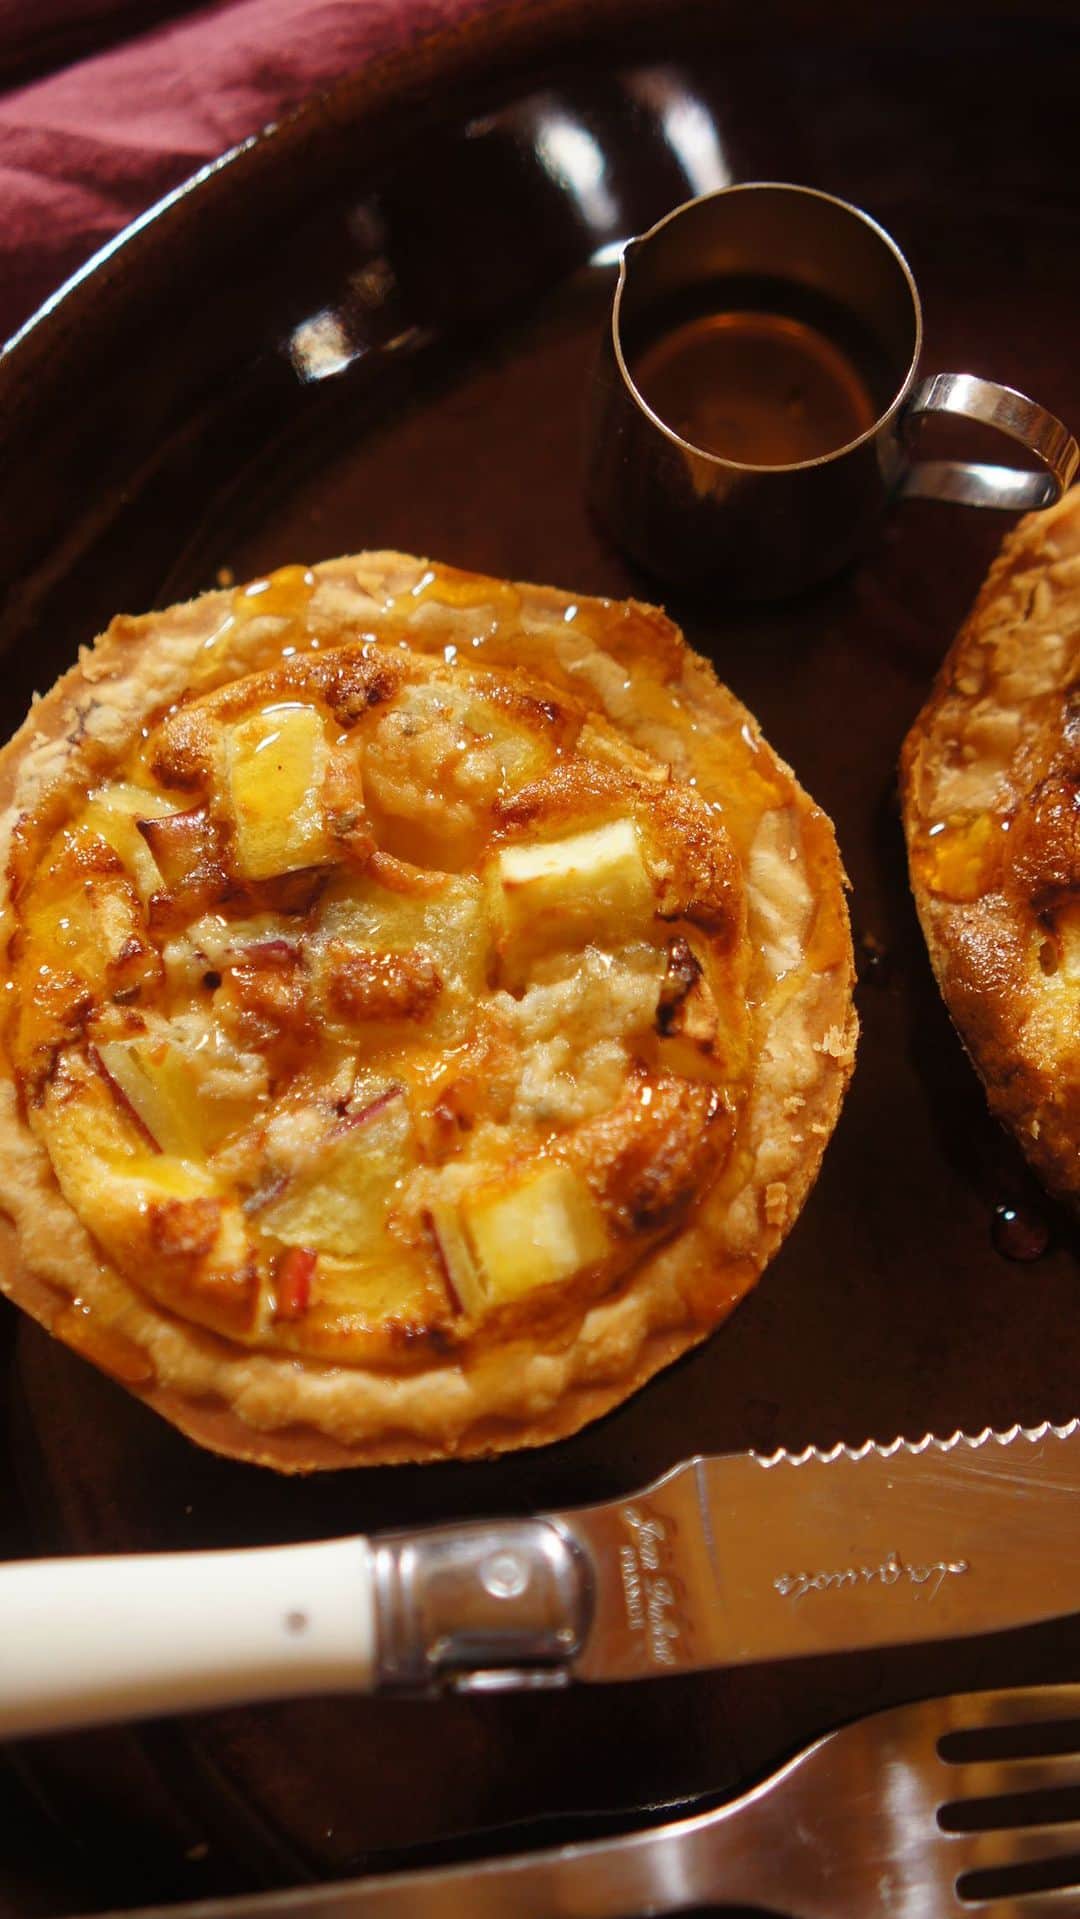 Vitantonioのインスタグラム：「【recipe】さつまいもとりんごのゴルゴンゾーラパイ（ワッフル＆ホットサンドベーカー＋タルトレットプレート） 　　 　　 さつまいもとりんごの甘さに、ゴルゴンゾーラの塩気を合わせた大人味の秋のパイ。秋の夜長に、ワインと合わせるのもおすすめです。ワッフルベーカーとタルトレットプレートを使えば、短時間でかんたん・きれいにパイ型が焼き上げられるから、色々な具材でアレンジが楽しめます。 （レシピ/写真：Rom岡本雅恵）⁣ ⁣　　 　 ＜材料＞（4個分） 冷凍パイシート…2枚 薄力粉…少々 さつまいも…60g ゴルゴンゾーラ…20g りんご…40g 蜂蜜…適量 　　 ● 卵液 ・卵…1個分 ・牛乳…20g ・生クリーム…20g ・粉チーズ…3g ・黒胡椒…少々 　　 　　 ＜つくり方＞ 1）説明に沿って解凍した冷凍パイシートに薄力粉を軽くまぶし、2等分にカットし、タルトレット型より少し大きめに綿棒を使って伸ばしておく。 2）ワッフルベーカーにタルトレットプレートをセットして予熱し、1の生地をのせて蓋を閉めて、きつね色になるまで5~6分加熱する。焼けたらクーラーにのせ粗熱をとる。（周りの生地をキッチンばさみなどで切り落として形を整える） 3）さつまいもを1cm角のダイス状に切り柔らかくなるまで茹でる。 4）ボウルに卵液の材料を入れてよく混ぜ合わせる。 5)焼き上げたパイ生地に、3のさつまいもと、ダイス状にカットしたりんご、4等分に分けたゴルゴンゾーラをちぎってのせ、卵液をそっと流し入れる。 6)180度に予熱しておいたオーブンで20~25分焼く。蜂蜜をかける。 　　 　　 ＝＝＝＝＝＝＝＝＝＝＝＝＝＝＝＝＝＝＝＝ ▷ワッフル＆ホットサンドベーカー #VWH600 ●900Wのハイパワー ●サクッふわっの焼き上がり ●耳付き食パンが焼けるマルチサンドプレート付属 ●レシピ広がる14種類のオプションプレート https://www.vitantonio.jp/products/?hash=waffle-baker 　　 　　 ▷タルトレットプレート #PVWH20TR #ビタントニオタルトレットプレート 手間のかかるタルトづくりも、生地をのせて焼くだけ。 https://www.vitantonio.jp/products/plate/PVWH-20-TR.html ＝＝＝＝＝＝＝＝＝＝＝＝＝＝＝＝＝＝＝＝⁡ 　　 　　　　 #vitantonio  #ビタントニオ  #ビタントニオレシピ公式 #ビタントニオワッフルアンドホットサンドベーカー #ワッフルメーカー #ワッフルベーカー #ホットサンドメーカー #ビタントニオ活用術  　　 #🍠 #さつまいもレシピ #さつまいも好きと繋がりたい #タルト #タルトレシピ #タルト好きな人と繋がりたい #秋のタルト #ゴルゴンゾーラ #ゴルゴンゾーラレシピ #ゴルゴンゾーラチーズケーキ #ワインに合うスイーツ #ゴルゴンゾーラとはちみつ #さつまいもとりんご  #冷凍パイシート #冷凍パイシートで簡単 #冷凍パイシートレシピ  #日々の暮らし #Rom #岡本雅恵」